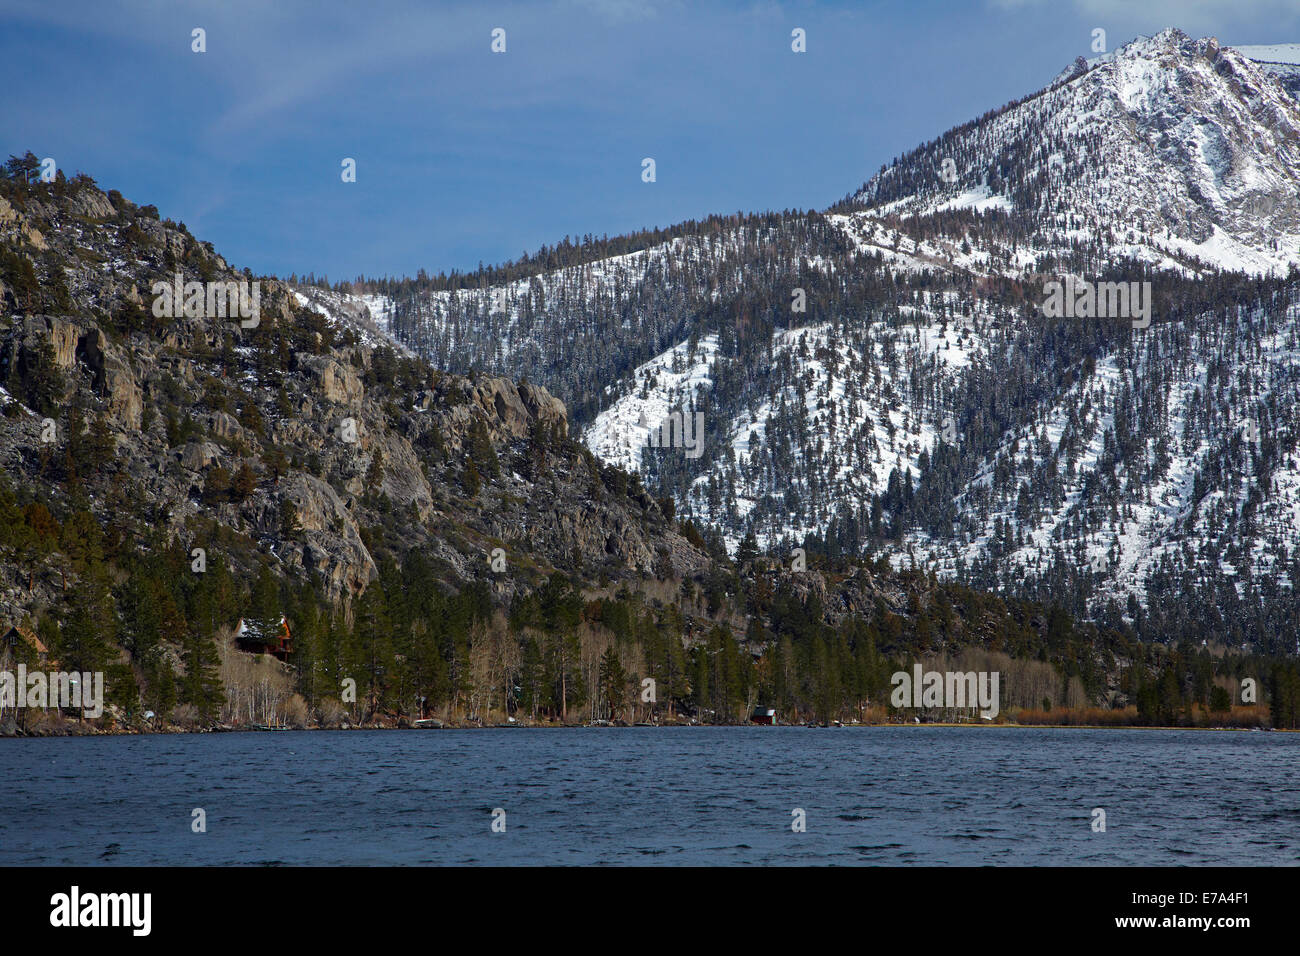 Silver Lake, cerca del Lago de junio, y la nieve en Carson, Pico del condado de Mono, Sierra Oriental, California, EE.UU. Foto de stock